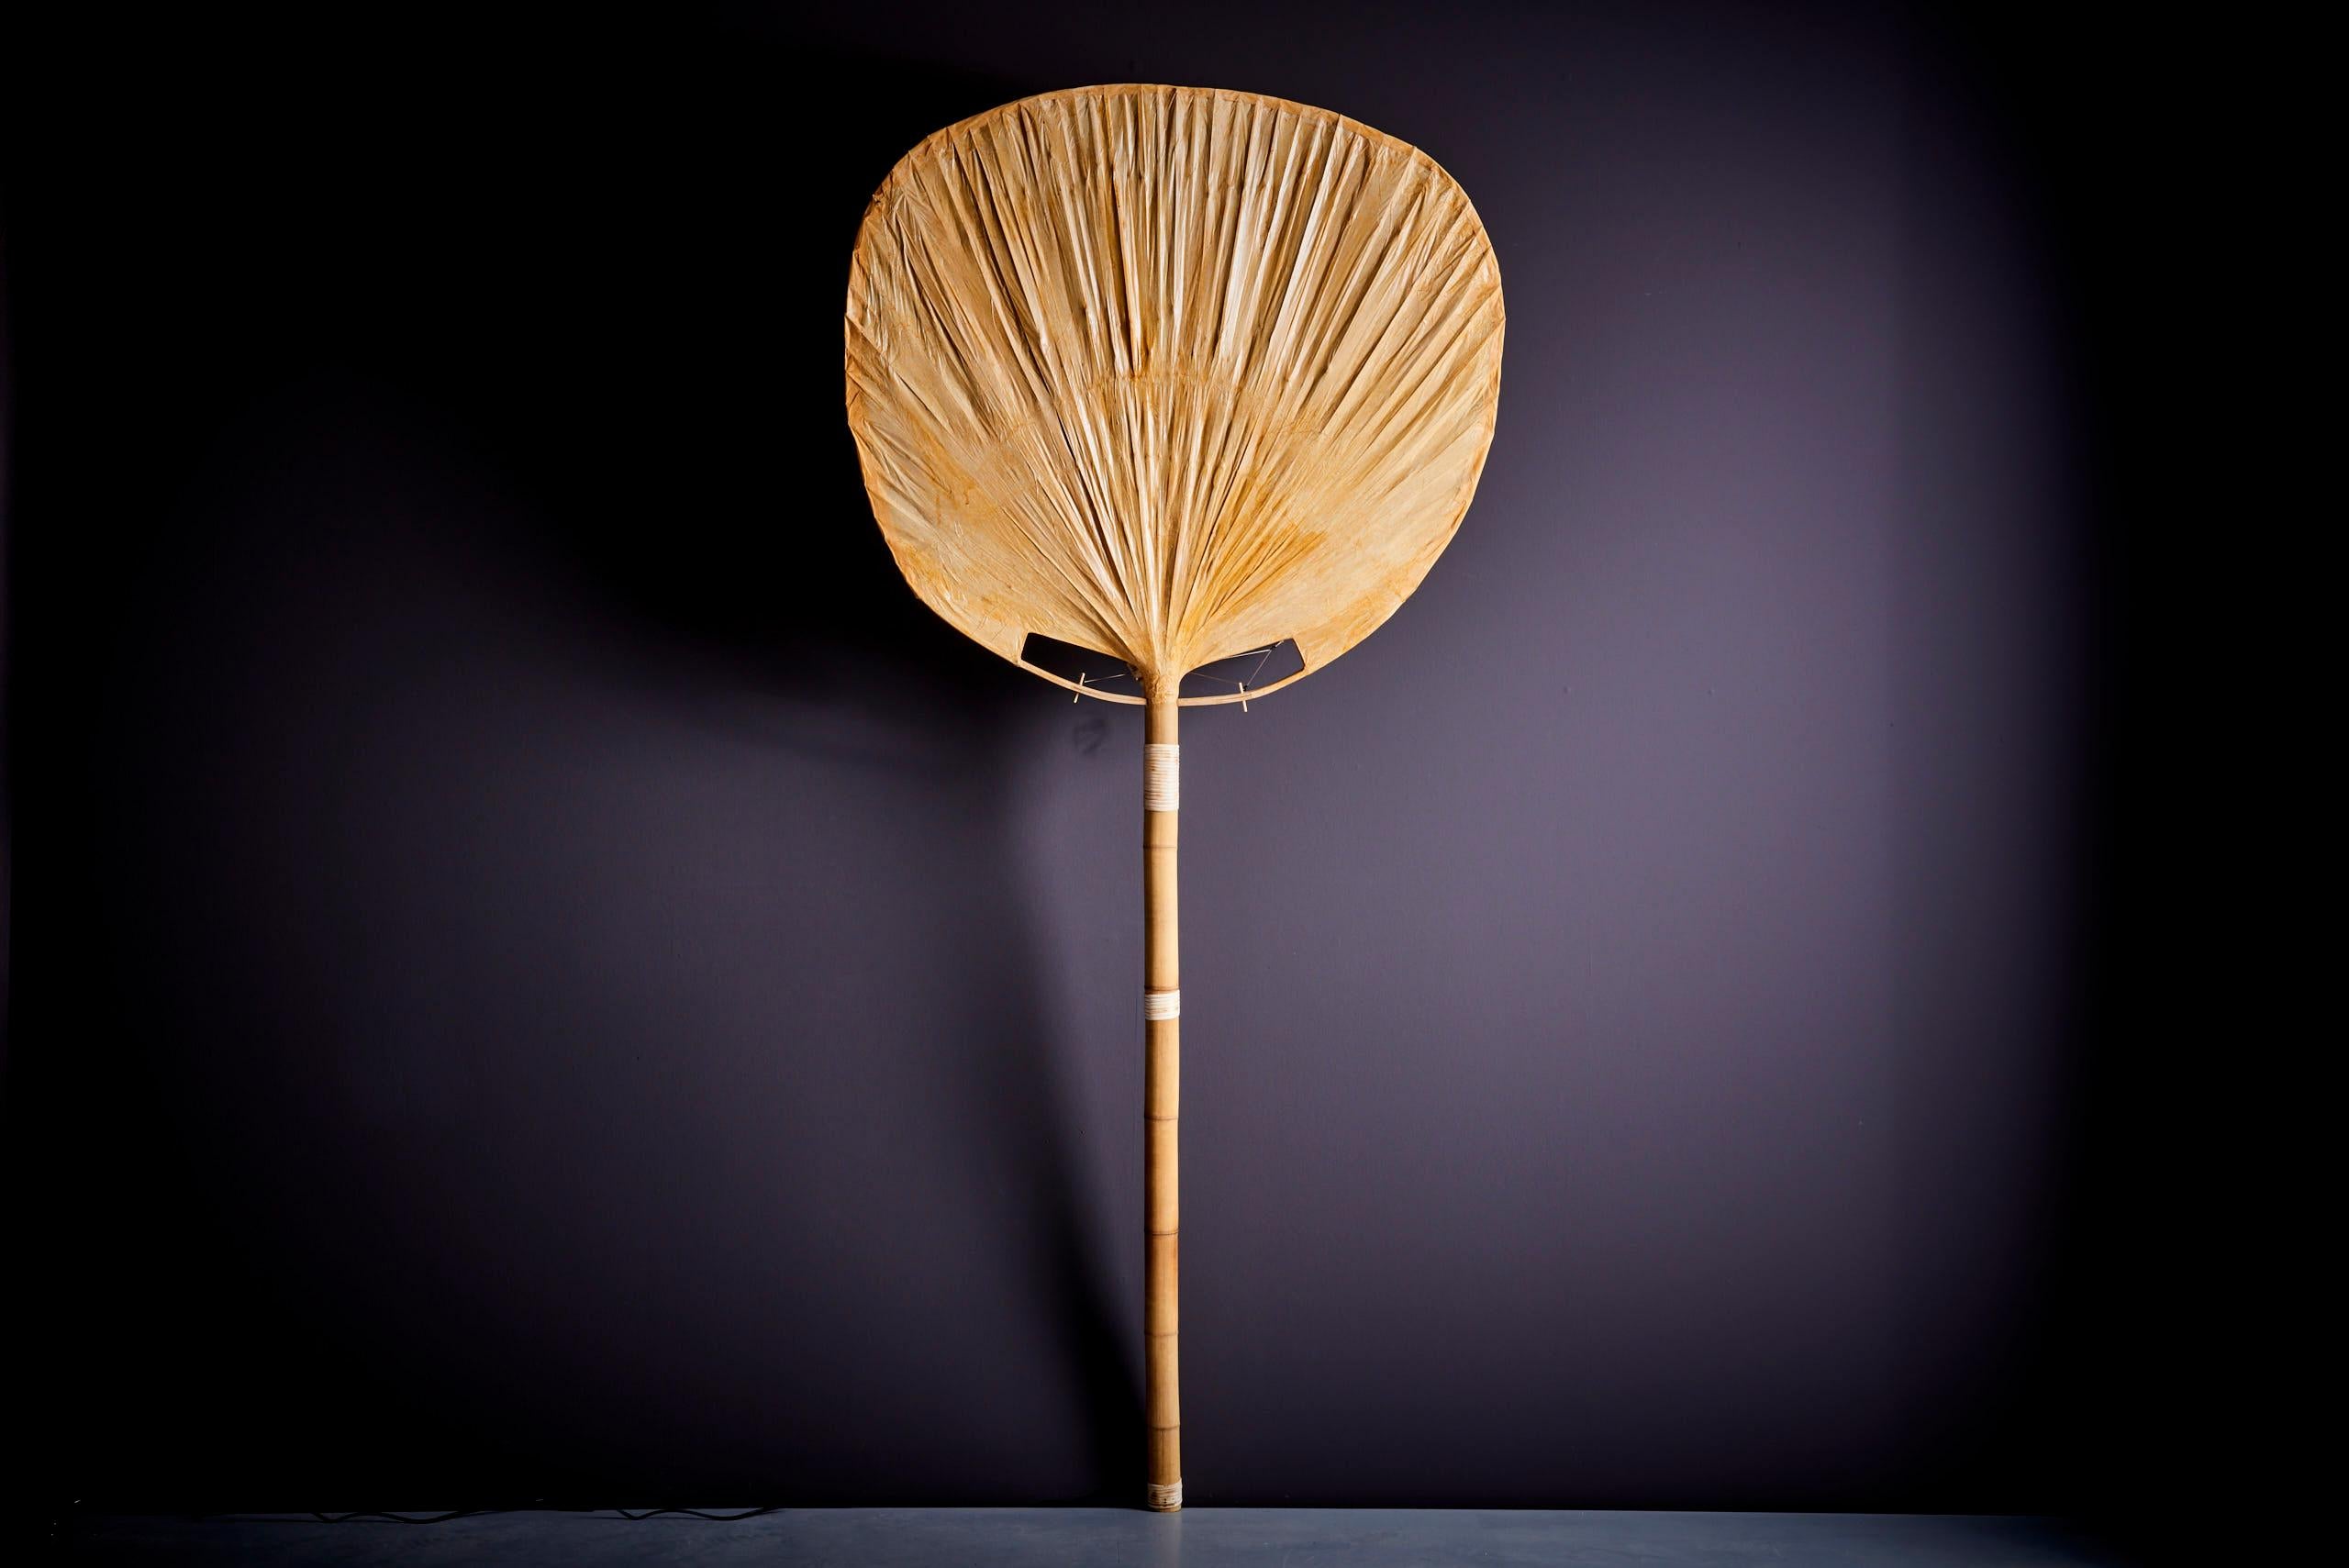 Lampadaire Ingo Maurer Uchiwa, 1970 Allemagne. Ce lampadaire s'inspire des éventails traditionnels japonais Uchiwa et est fabriqué en papier de riz japonais. L'intérêt d'Ingo Maurer pour le papier destiné aux abat-jour est lié à son intérêt pour le